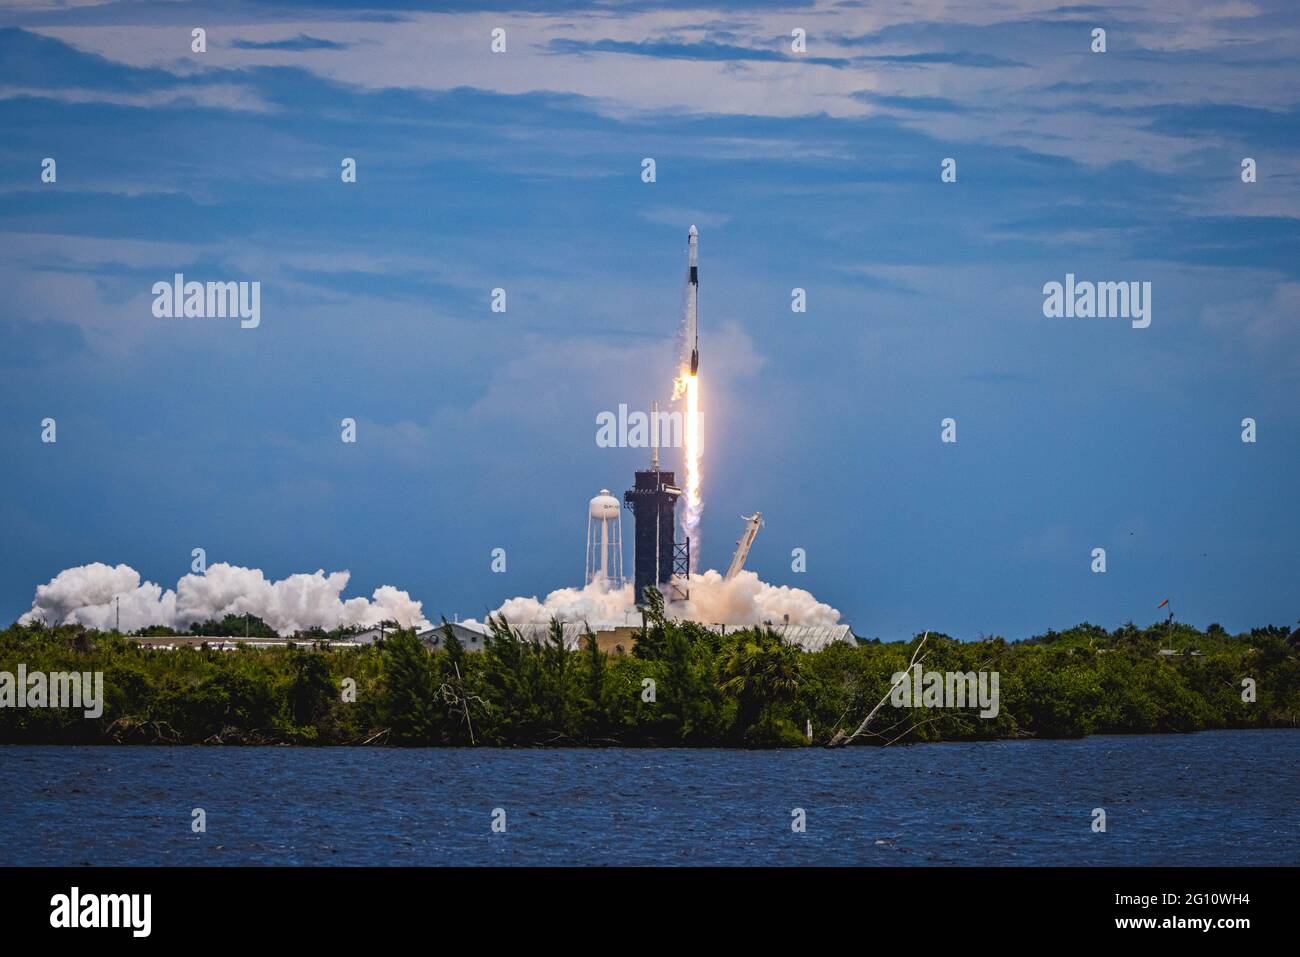 STATI UNITI. 03 giugno 2021. Il Falcon 9 SpaceX Dragon riforniva la navicella spaziale sulla sua strada per la Stazione spaziale Internazionale dopo il lancio alle 13:29 EDT il 3 giugno 2021 dal Launch Pad 39A al Kennedy Space Center della NASA in Florida trasportando quasi 7,300 libbre di esperimenti, array solari e altro carico. (Foto di Alex G. Perez/AGPfoto/Sipa USA) Credit: Sipa USA/Alamy Live News Foto Stock